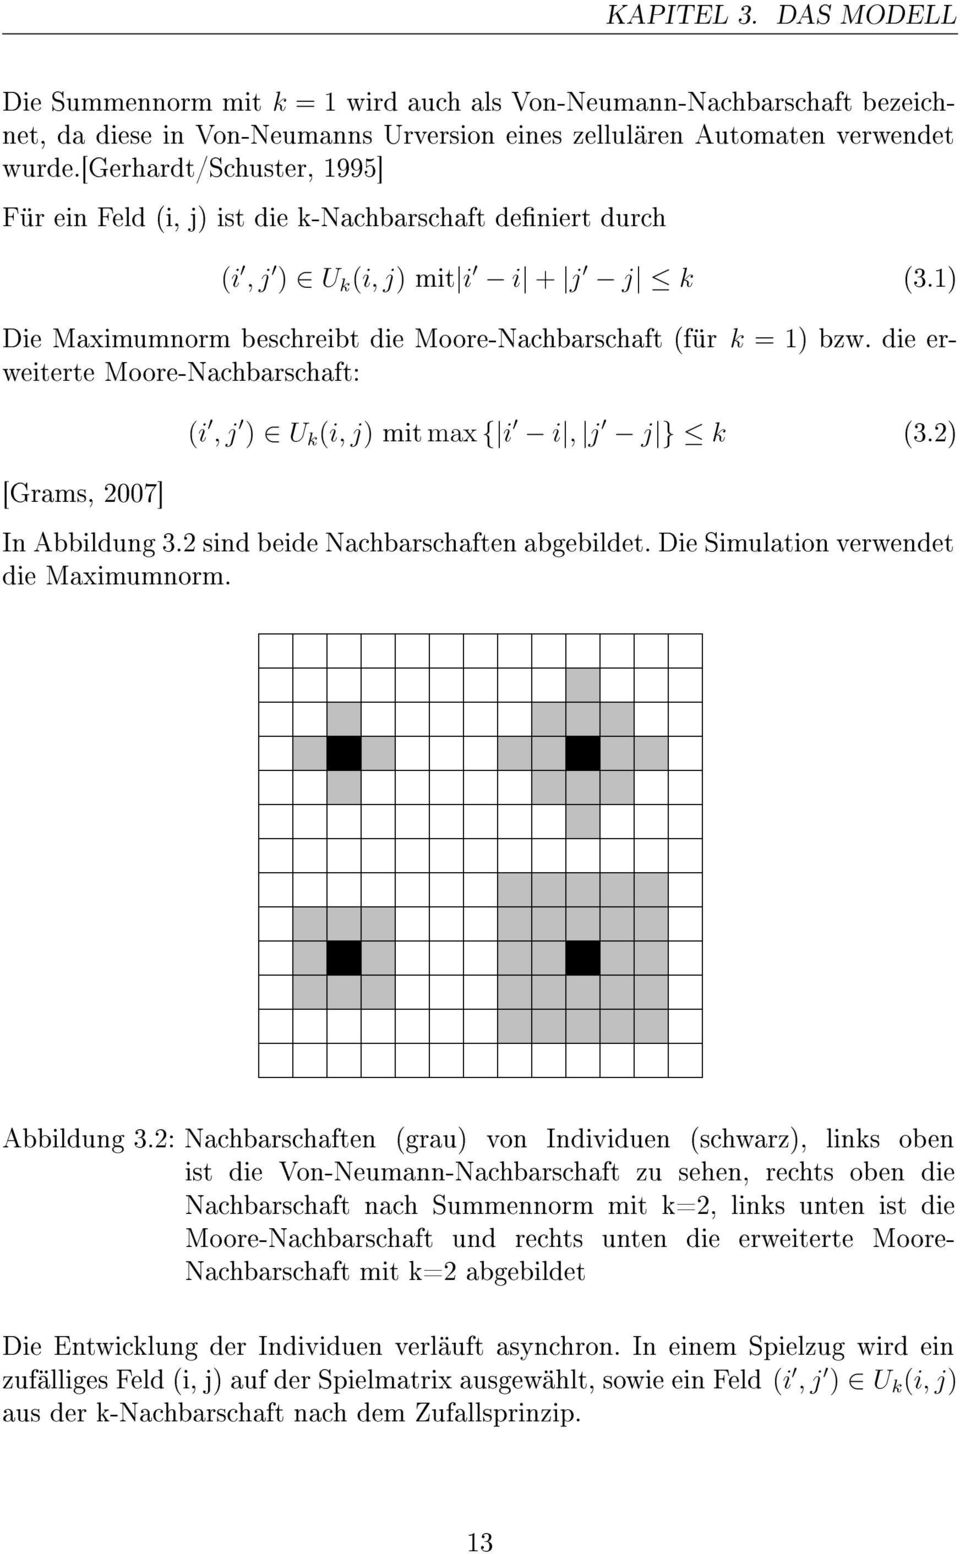 die erweiterte Moore-Nachbarschaft: [Grams, 2007] (i, j ) U k (i, j) mit max { i i, j j } k (3.2) In Abbildung 3.2 sind beide Nachbarschaften abgebildet. Die Simulation verwendet die Maximumnorm.